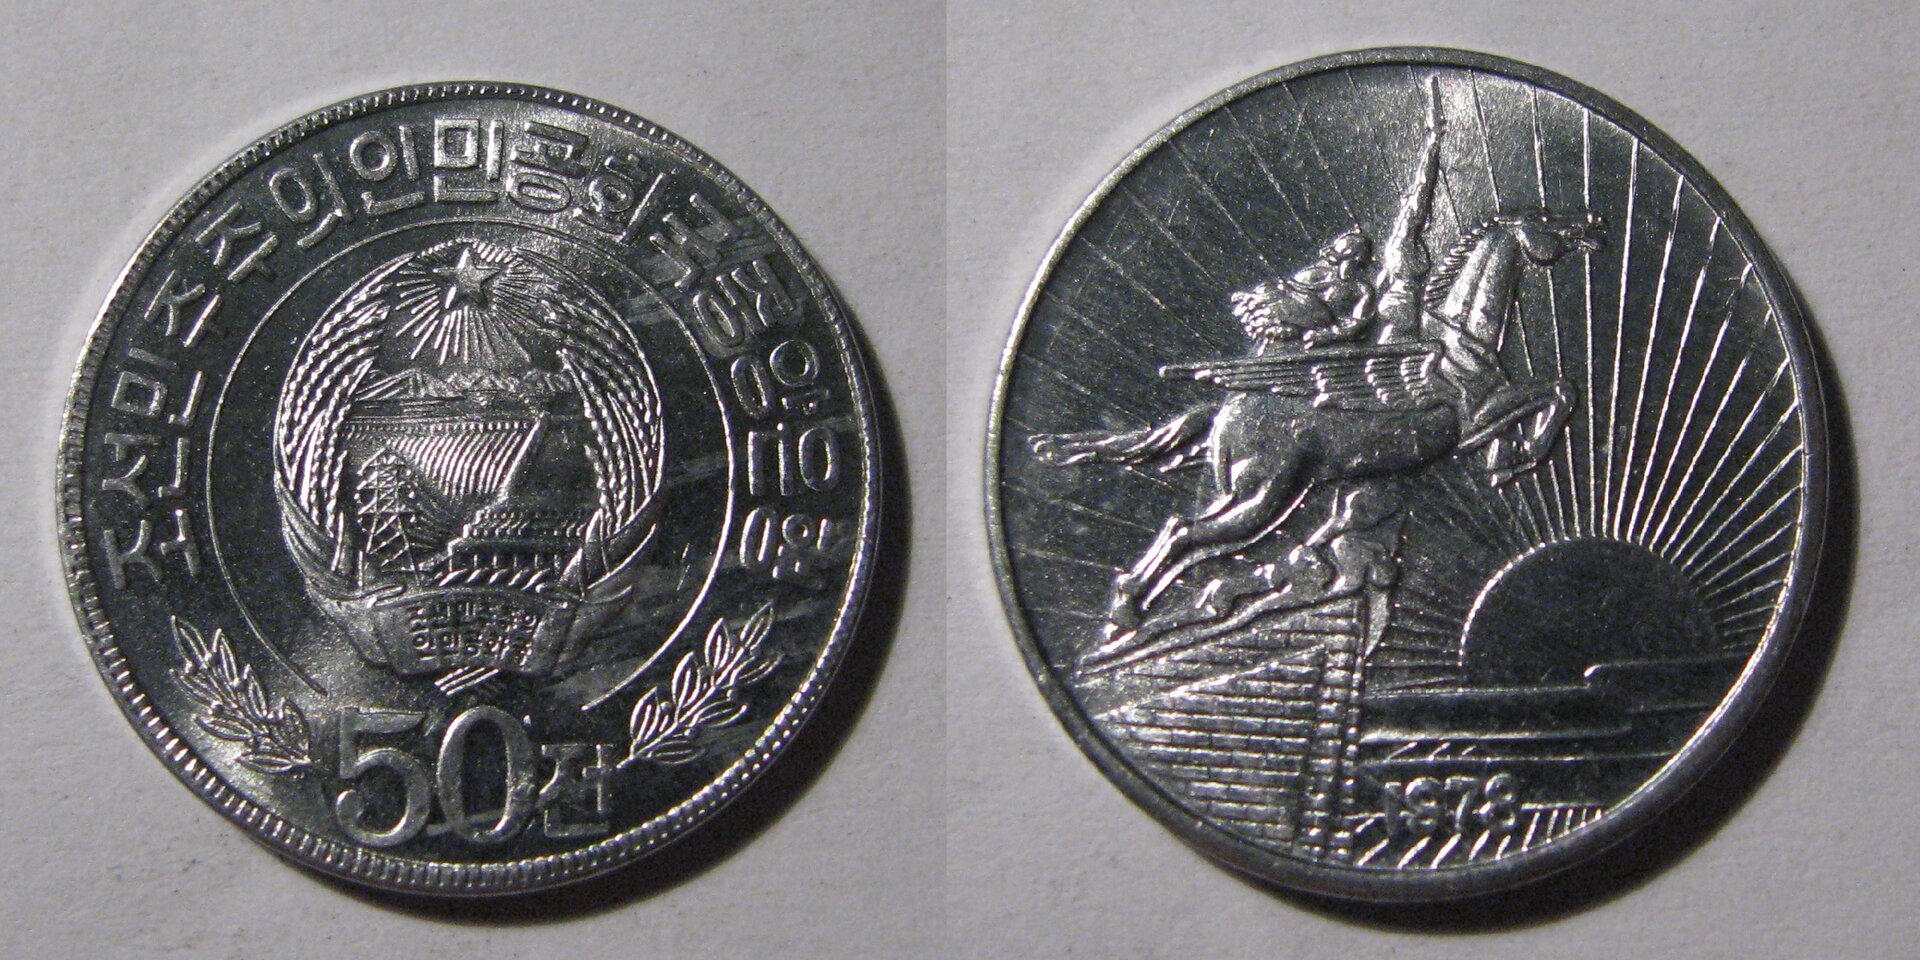 DPRK 50 Chon coin.jpg